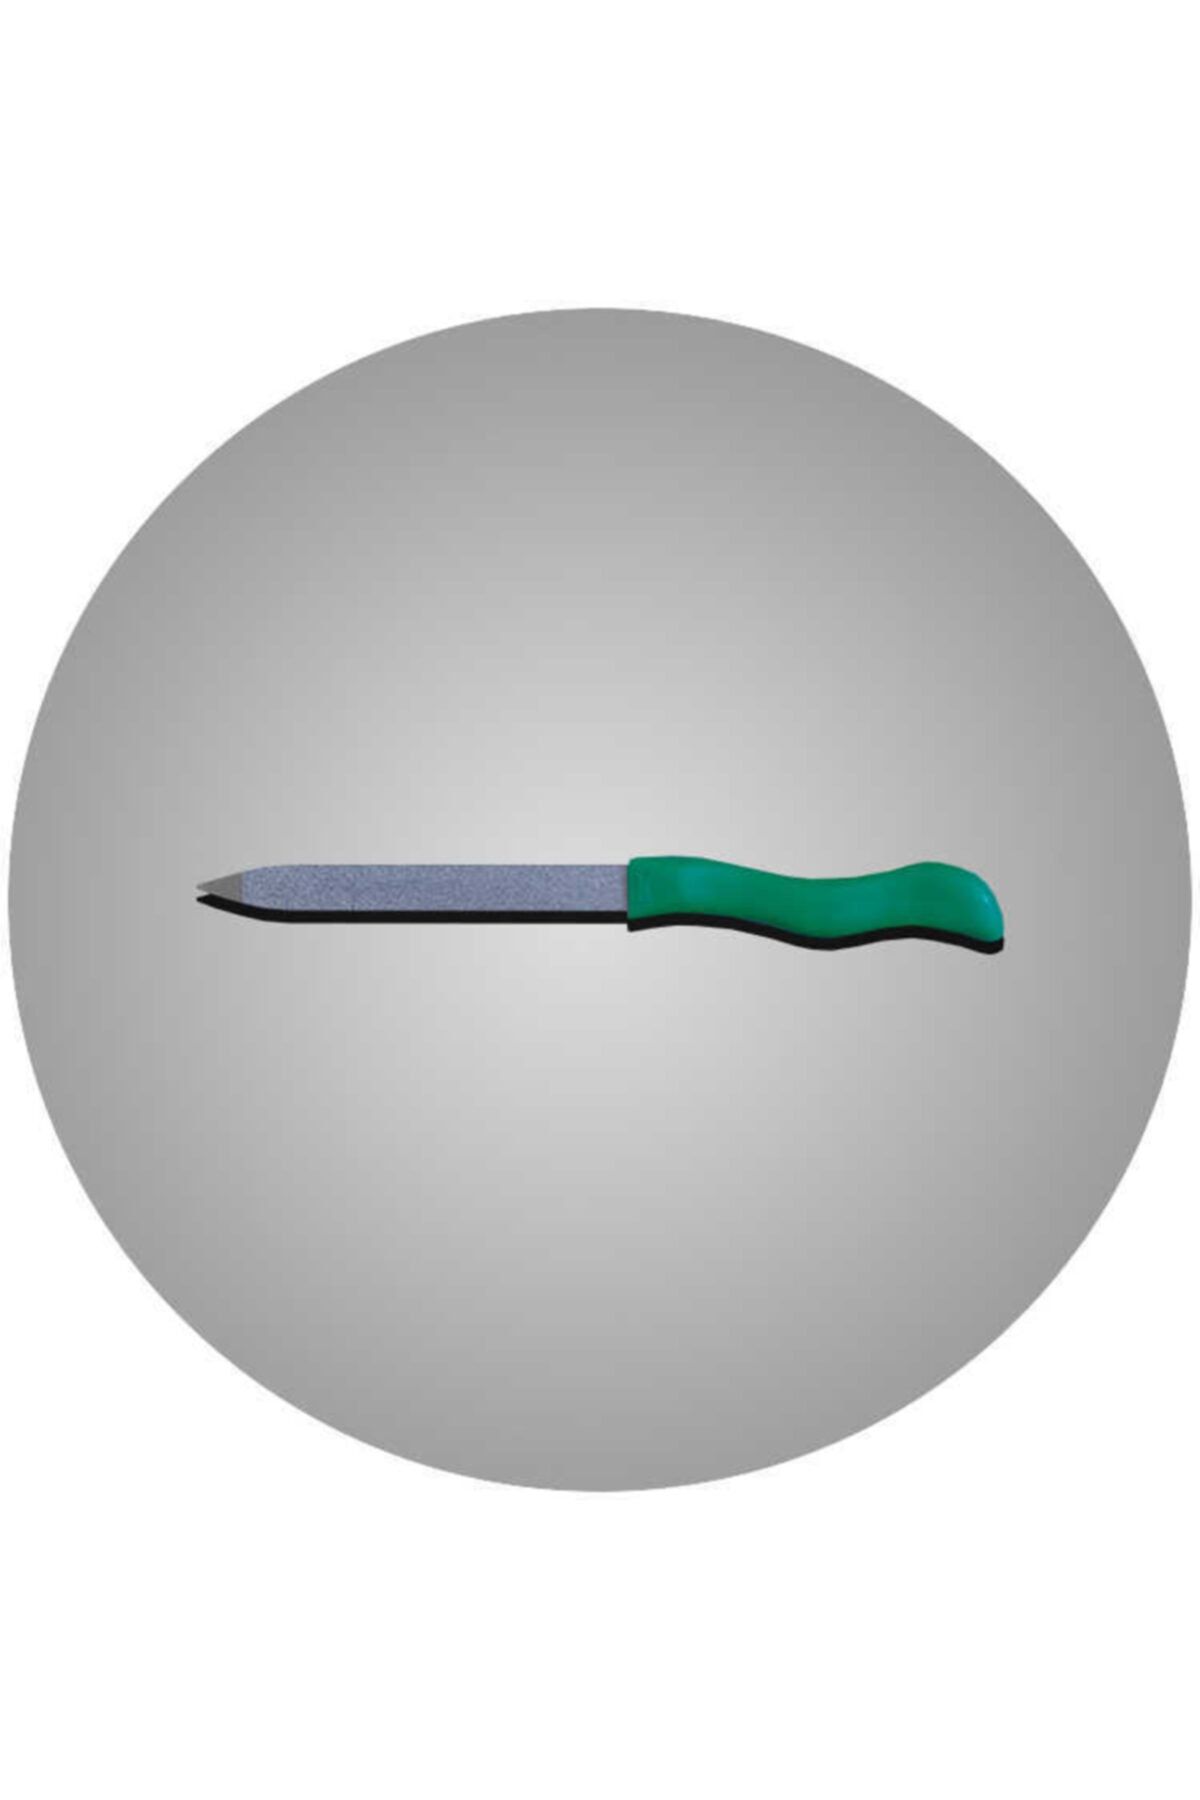 Solingen Gösol 13cm Safir Püskürtme Törpü (Yeşil) 720165013